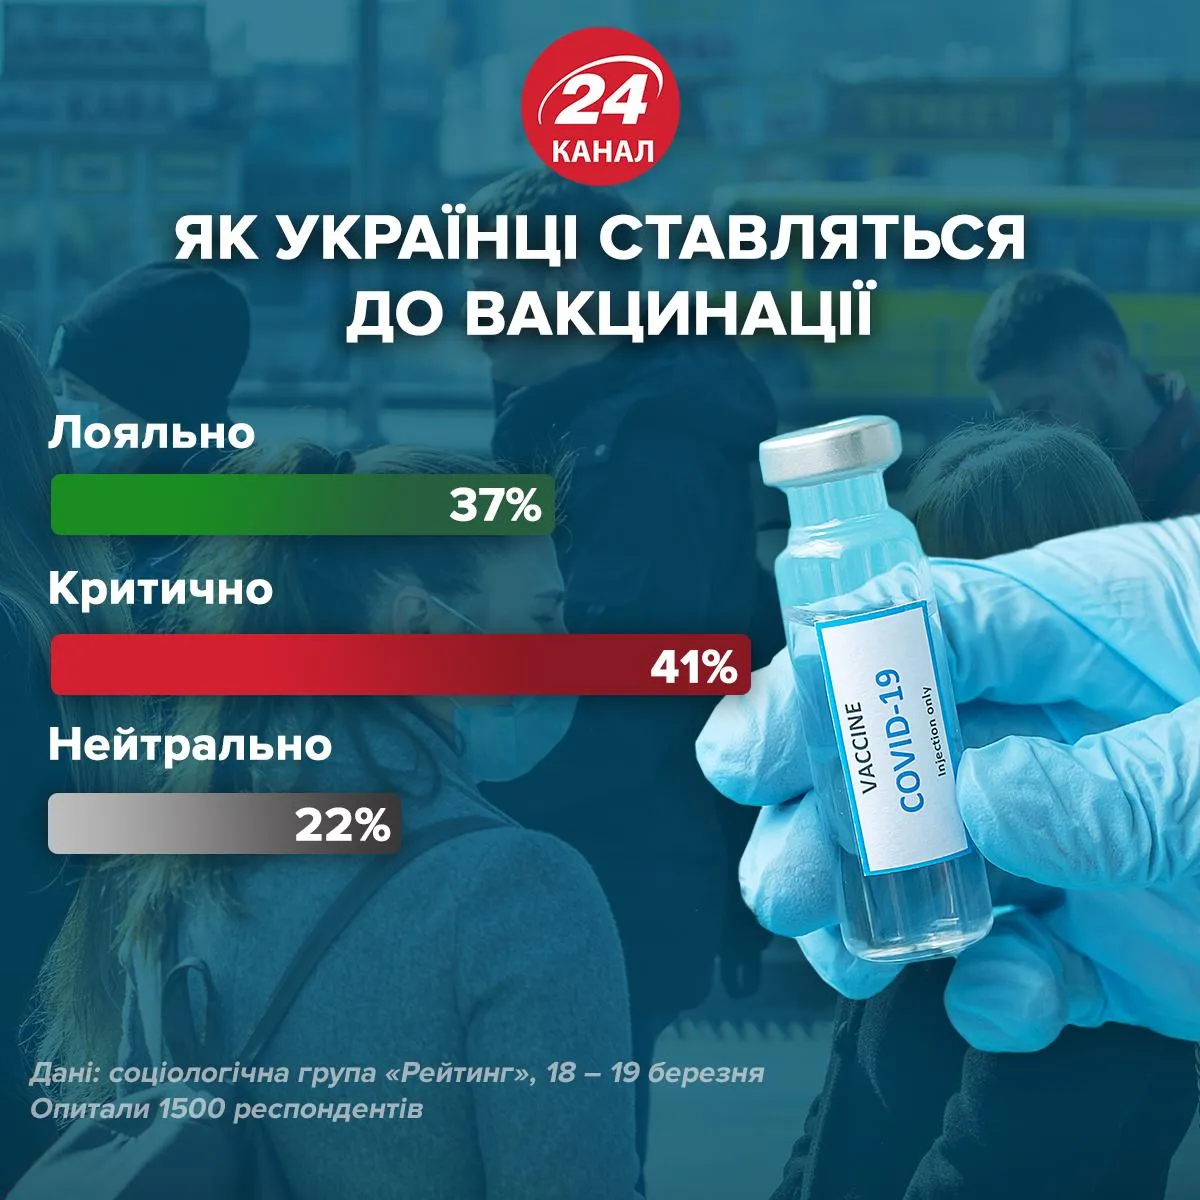 Как украинцы относятся к вакцинации / Инфографика 24 канала